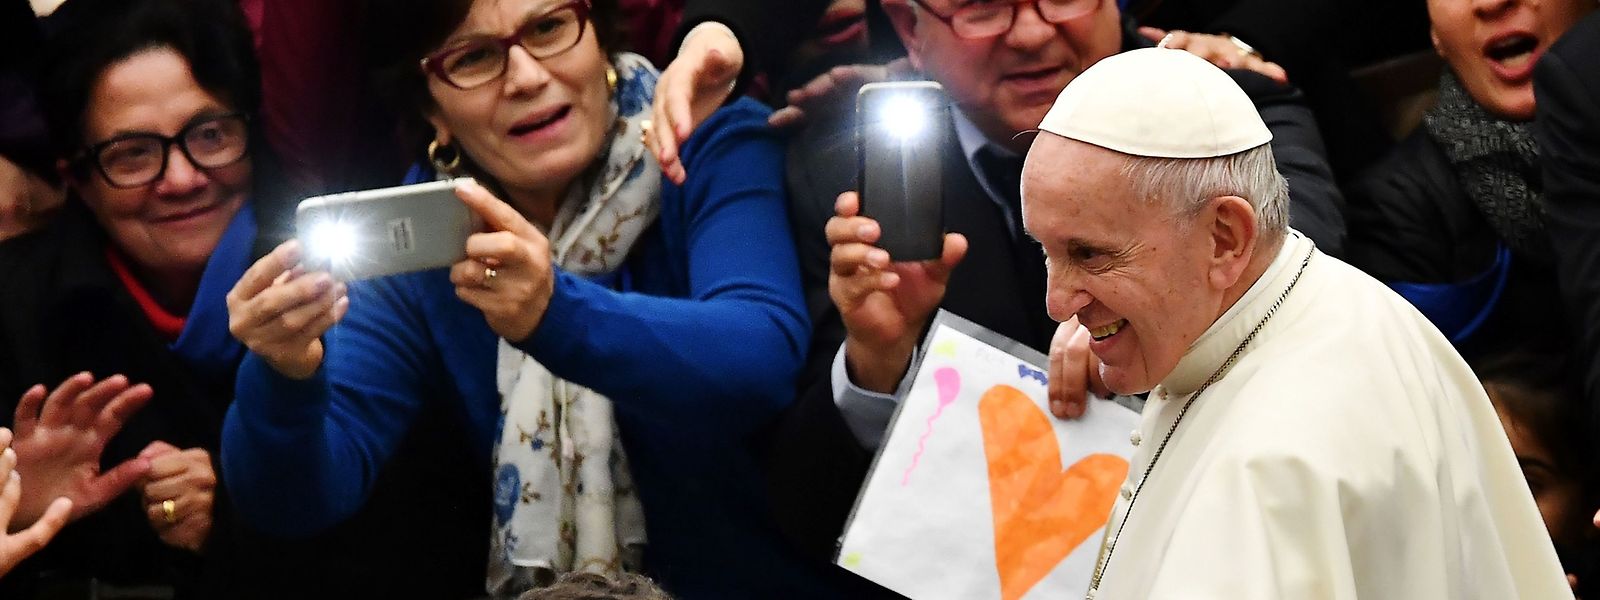 Papst Franziskus schüttelt die Hände von Gläubigen (20. Februar 2019).